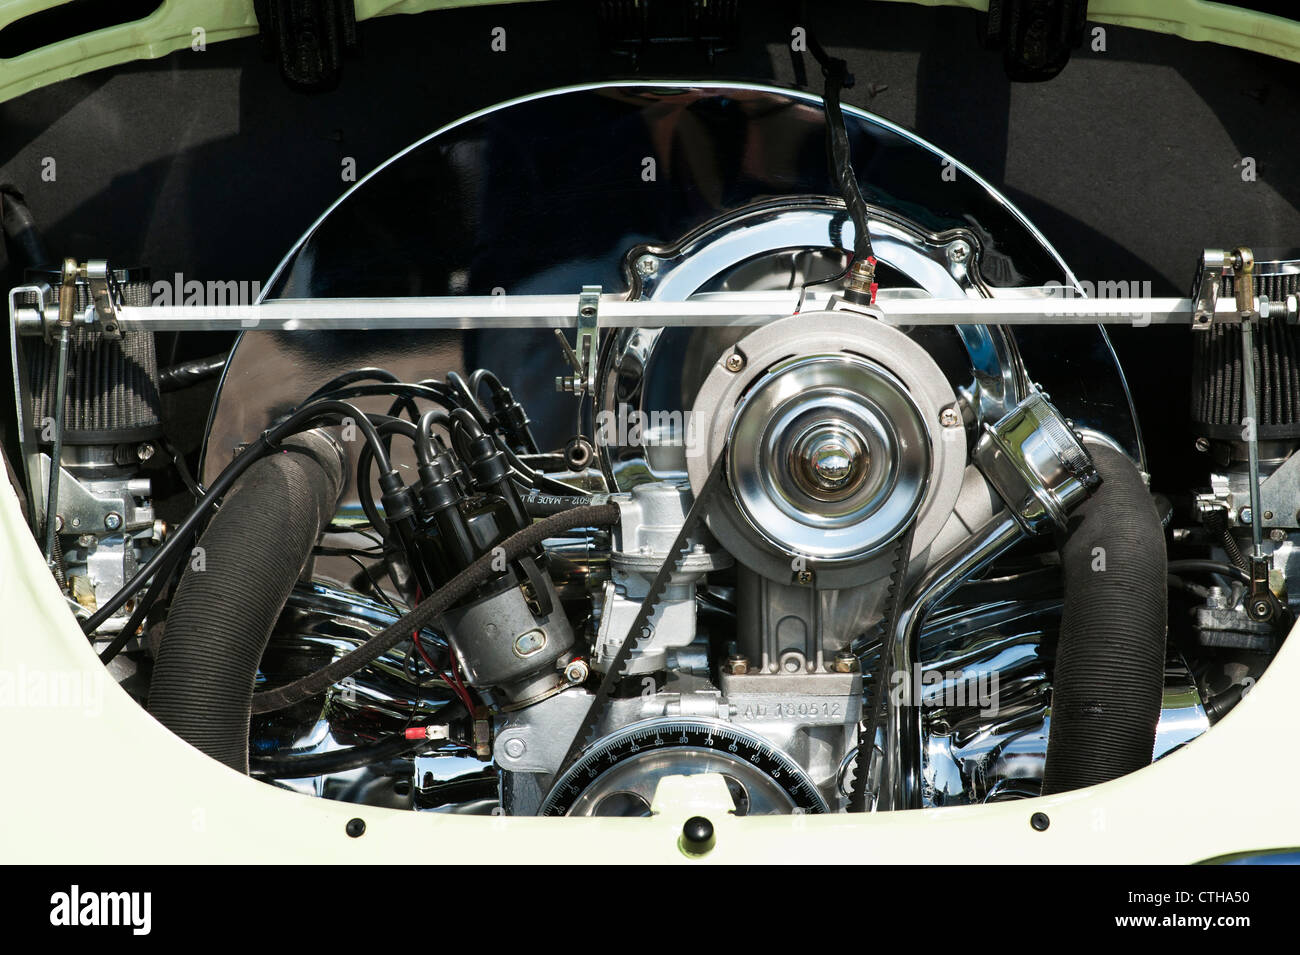 VW Volkswagen Beetle car engine Stock Photo